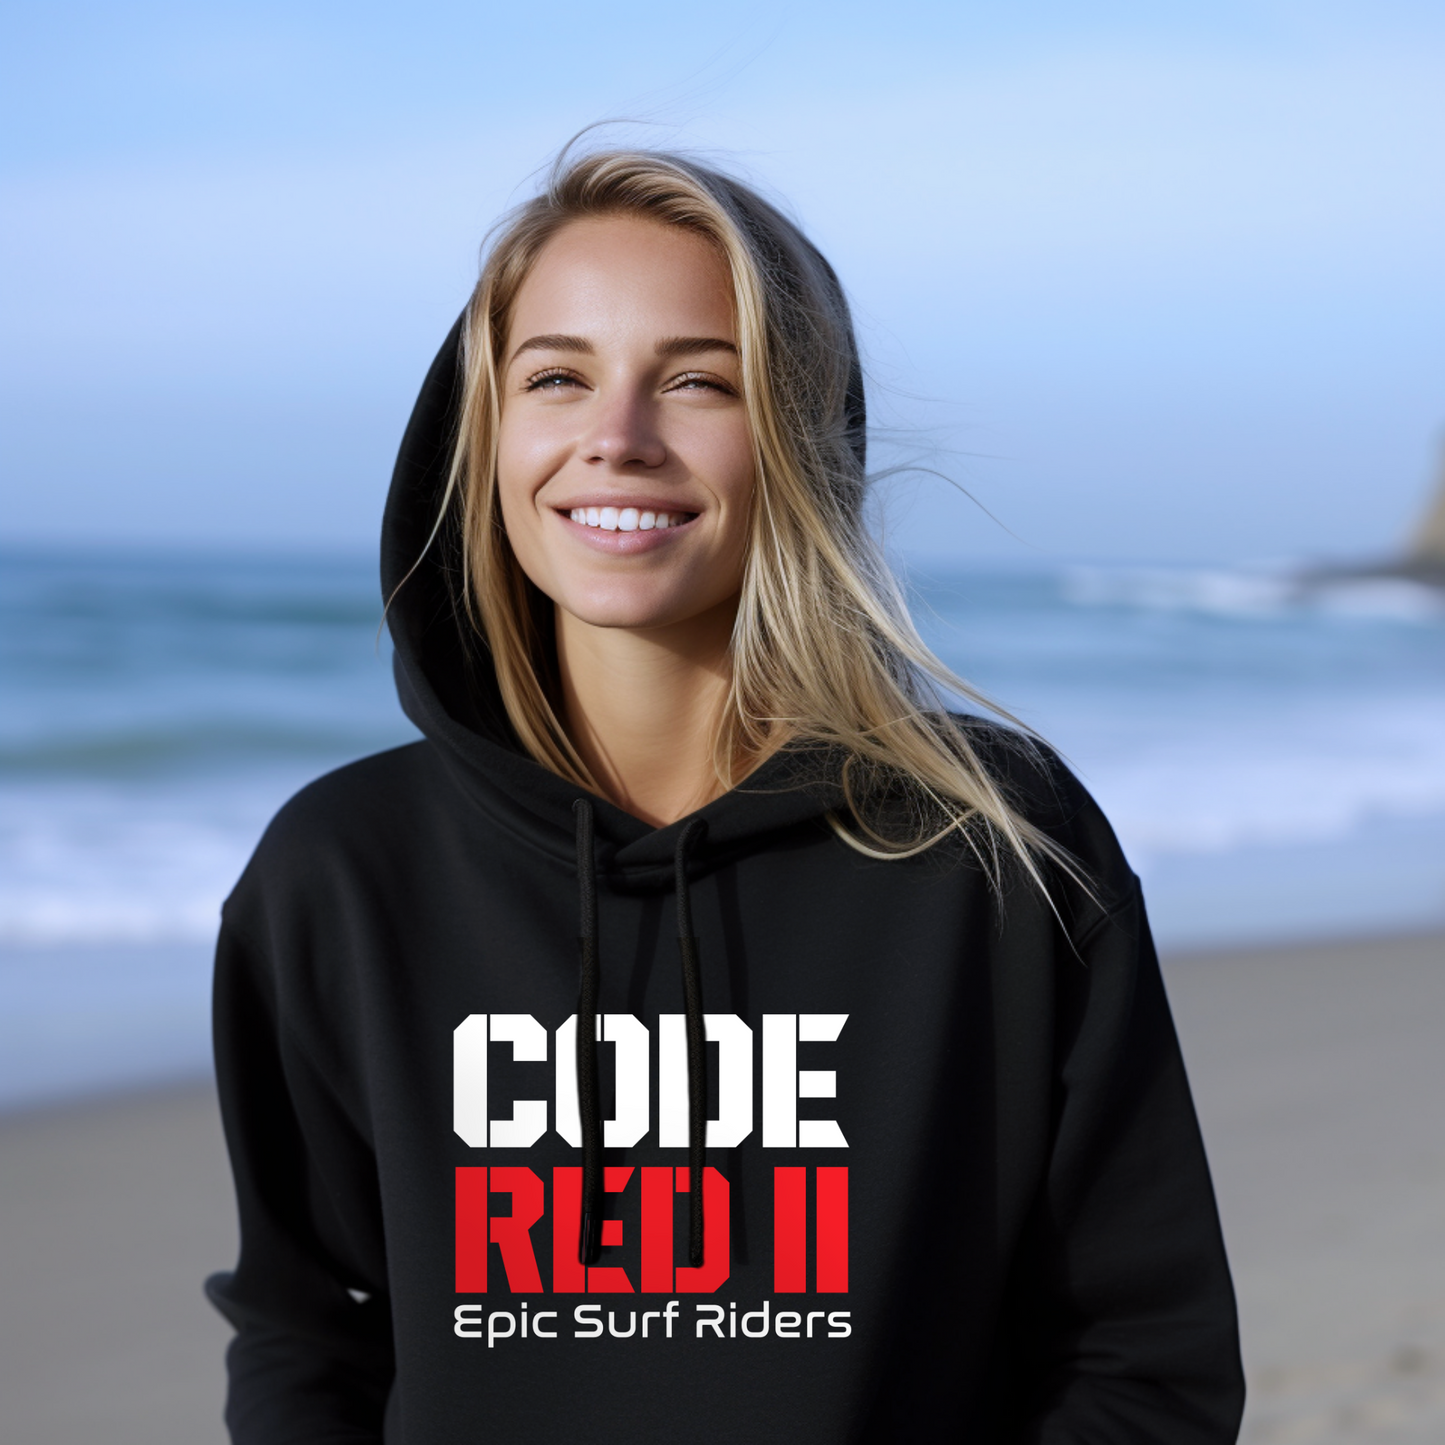 CODE RED II Tahiti surf hoodie